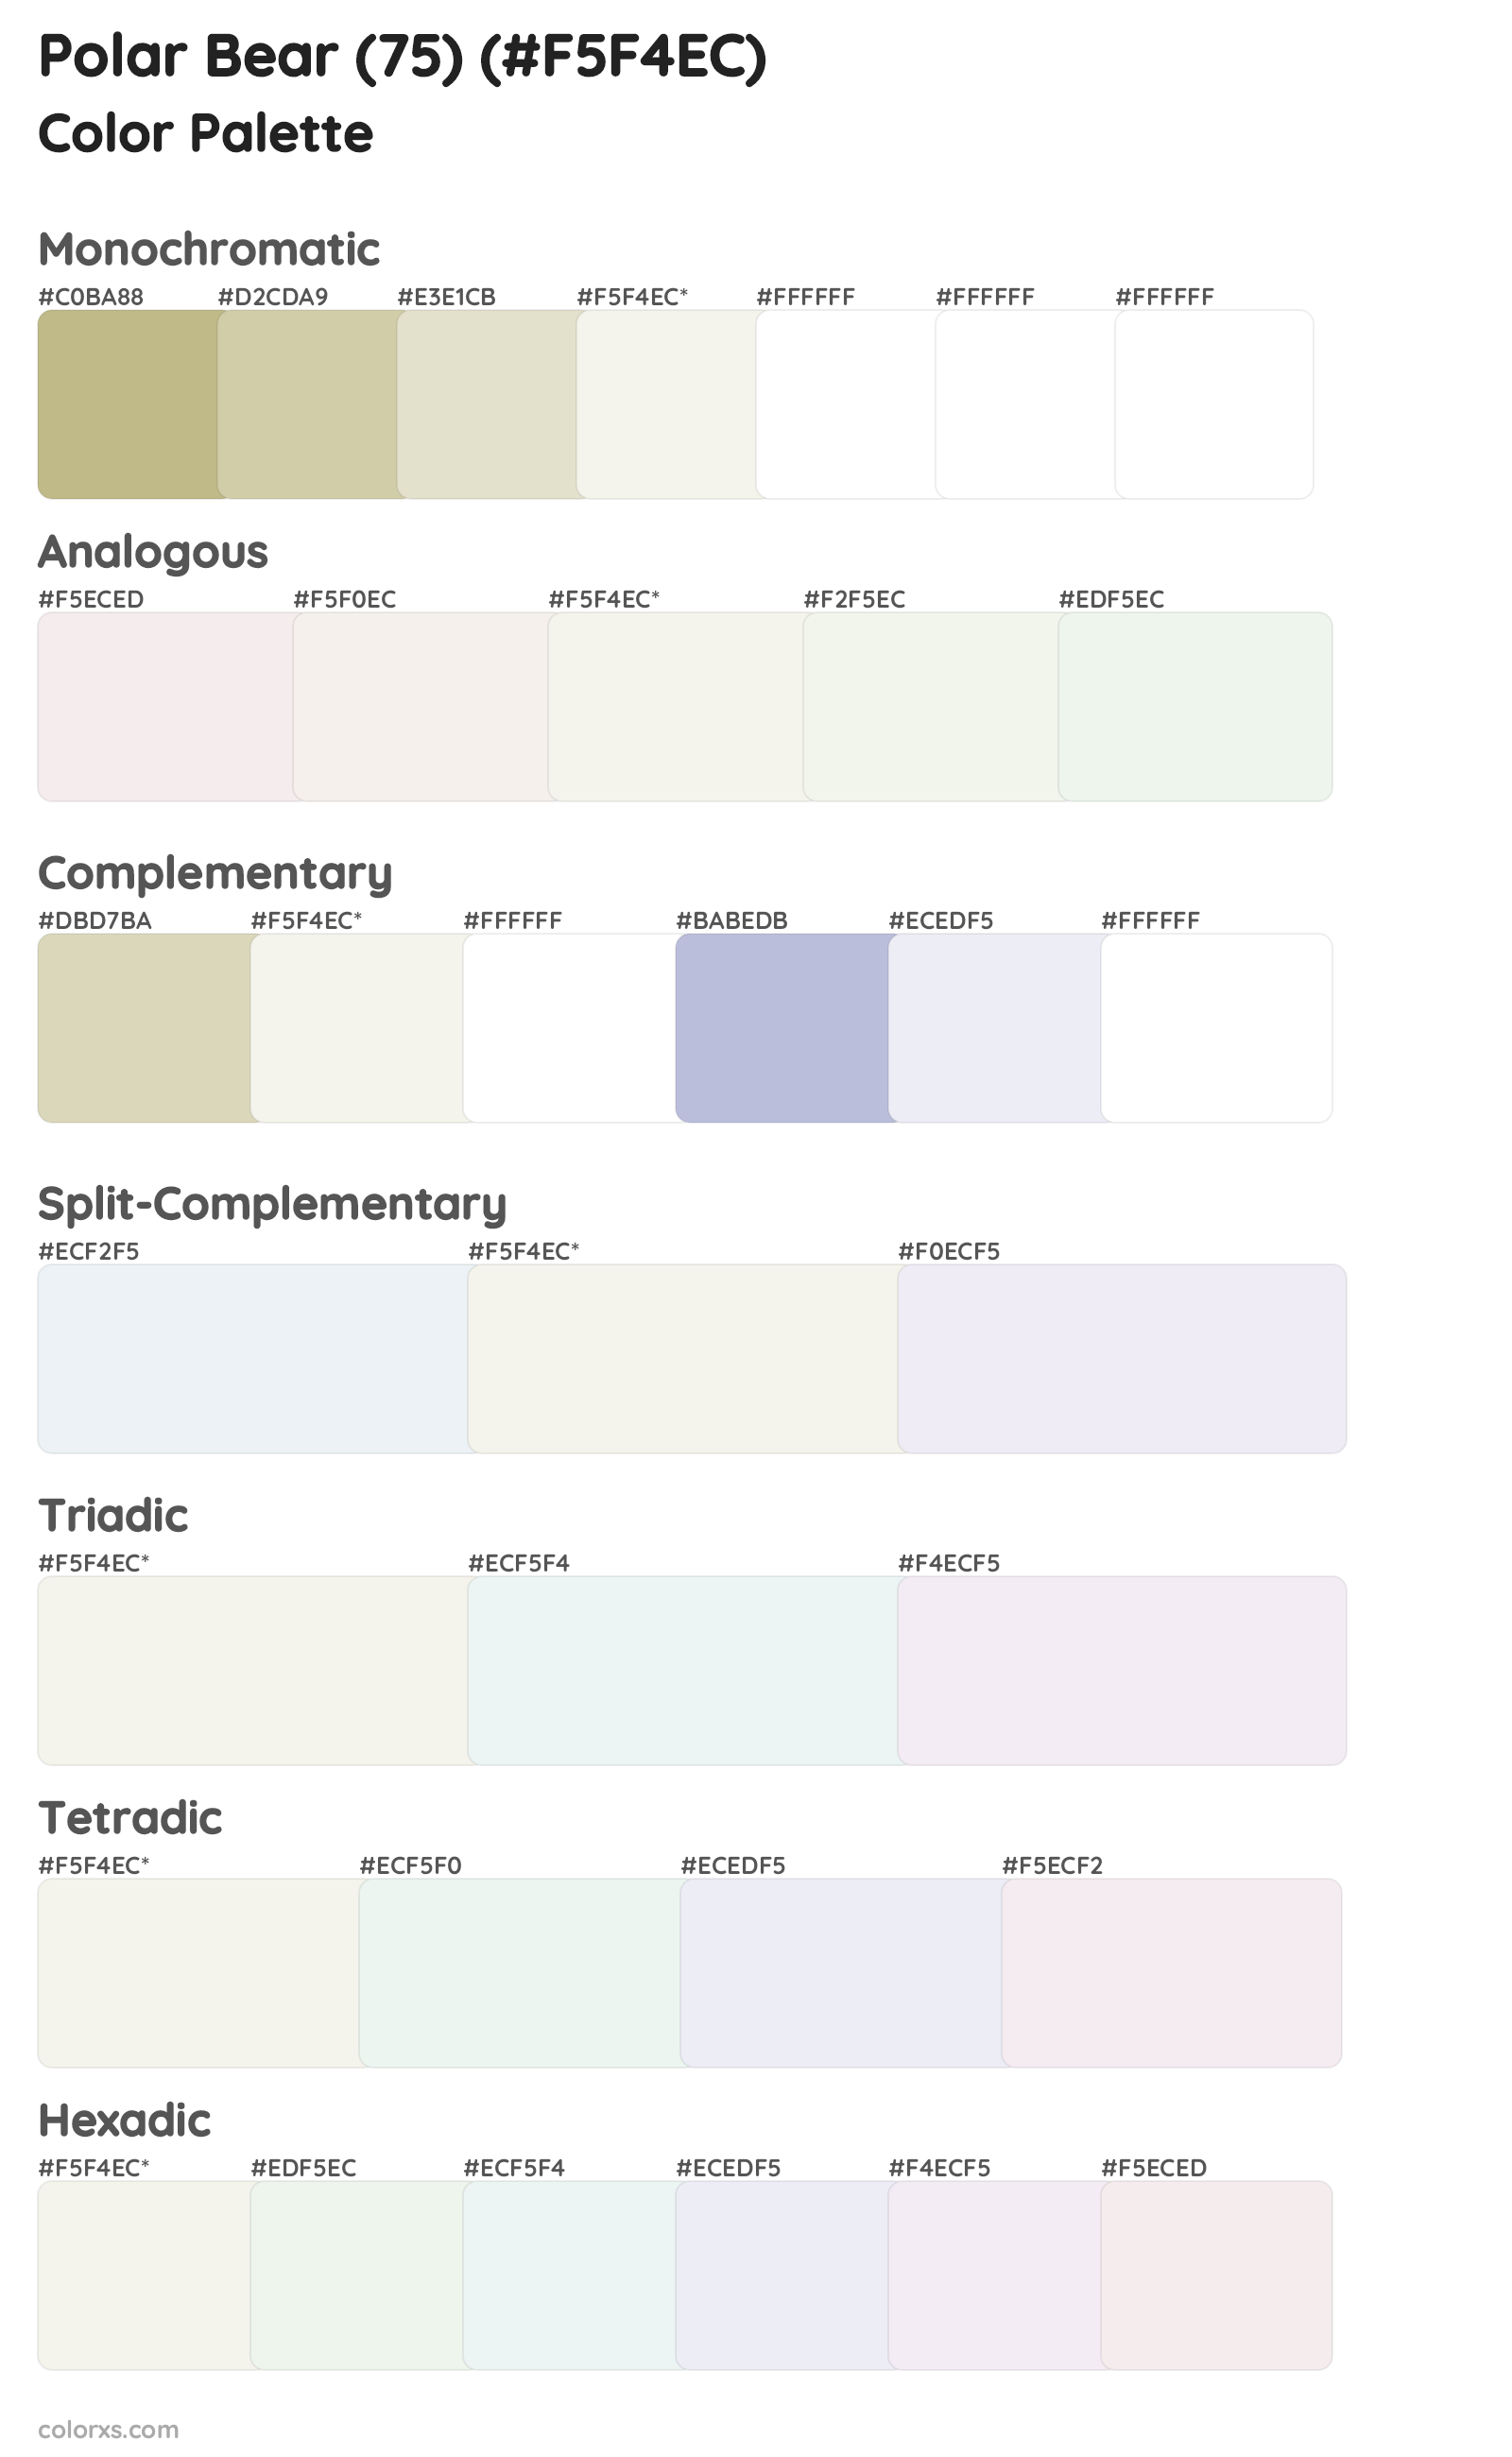 Polar Bear (75) Color Scheme Palettes